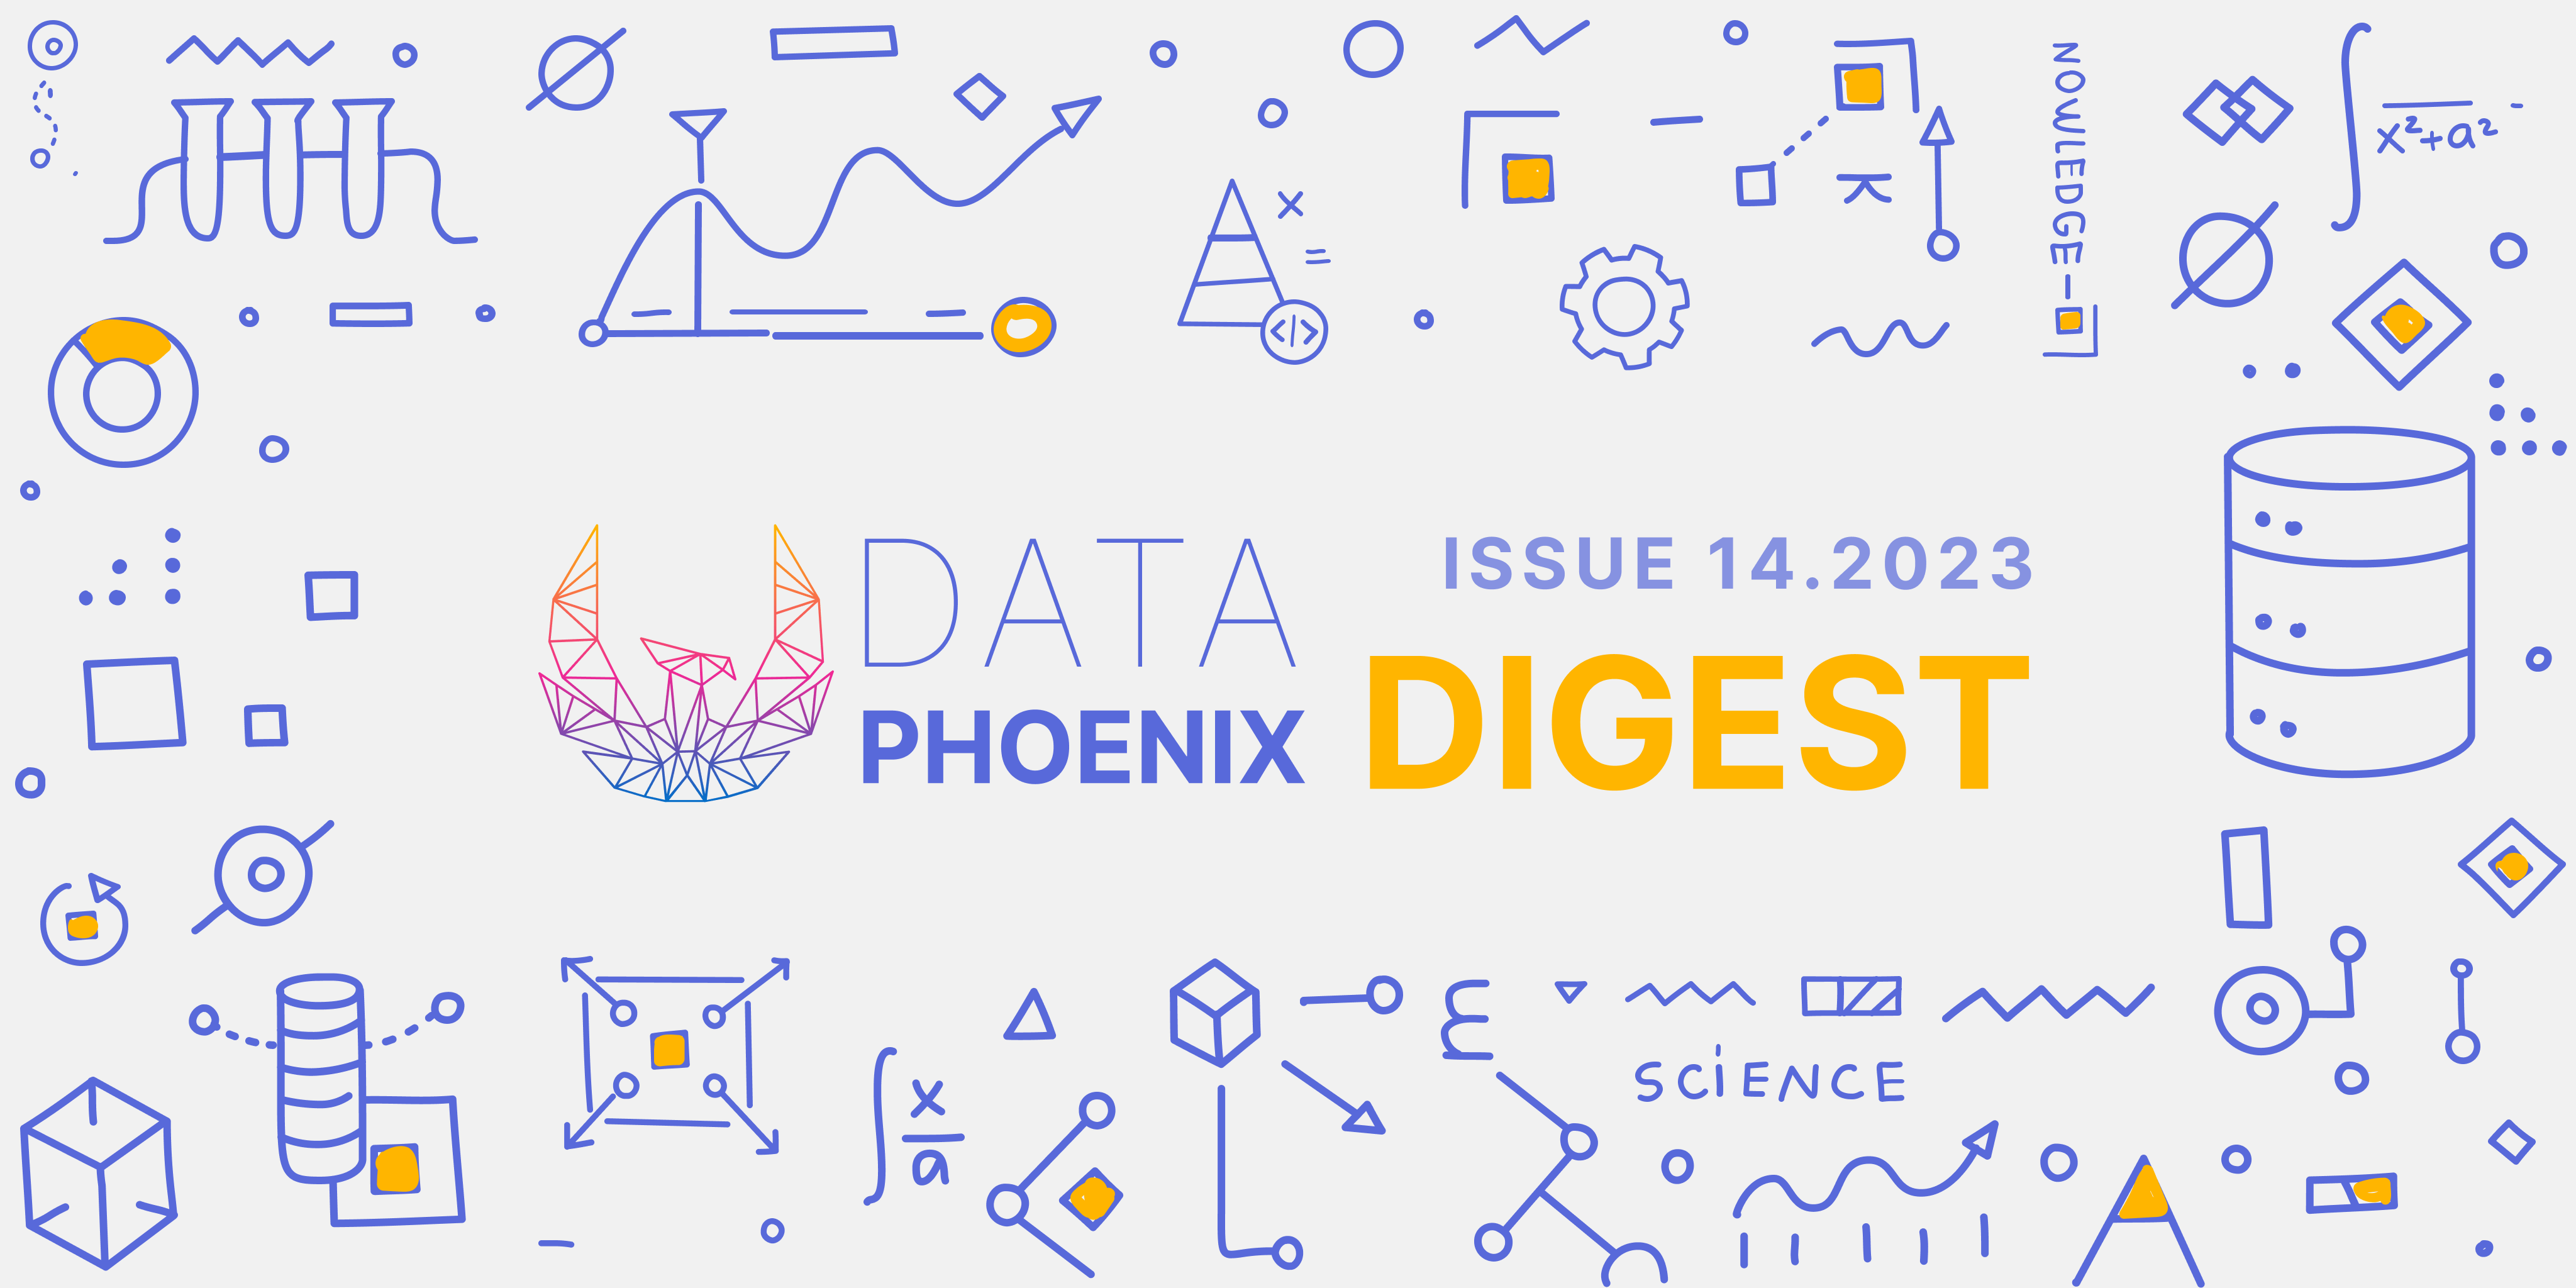 Data Phoenix Digest - ISSUE 14.2023